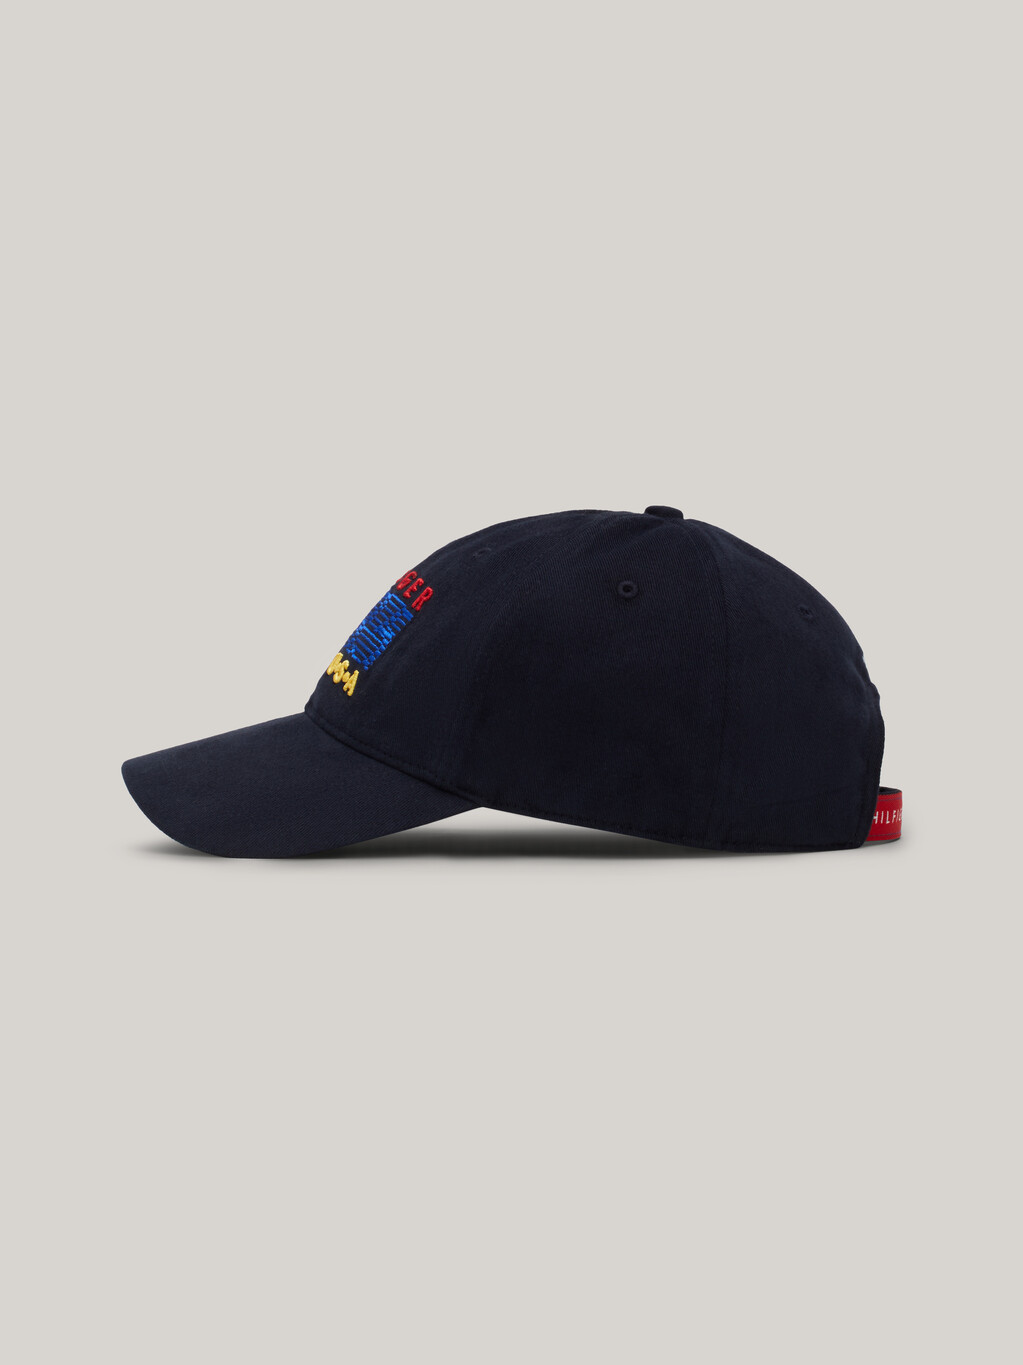 Hilfiger Team 棒球帽, Space Blue, hi-res